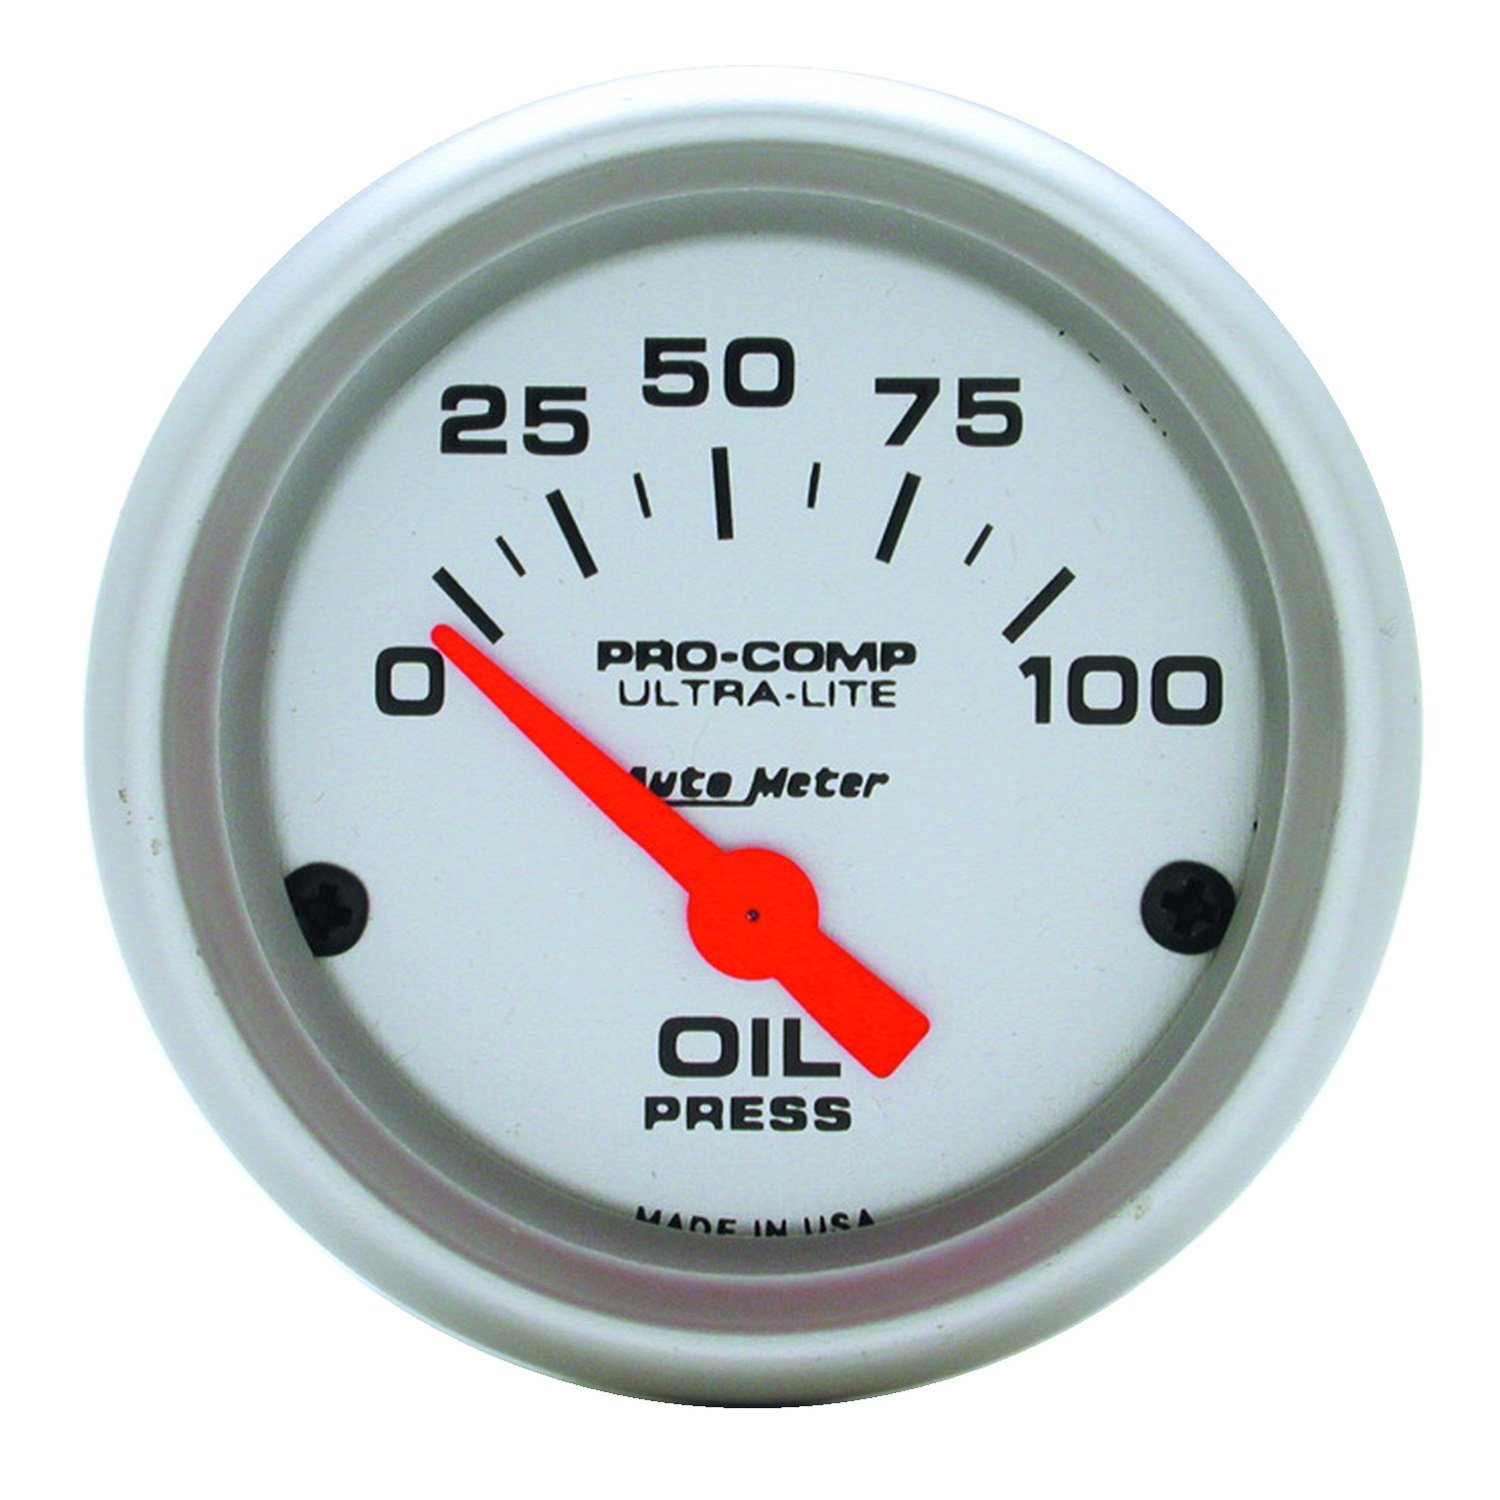 Ultra-Lite Oil Pressure Gauge 2-1/16" short sweep electrical